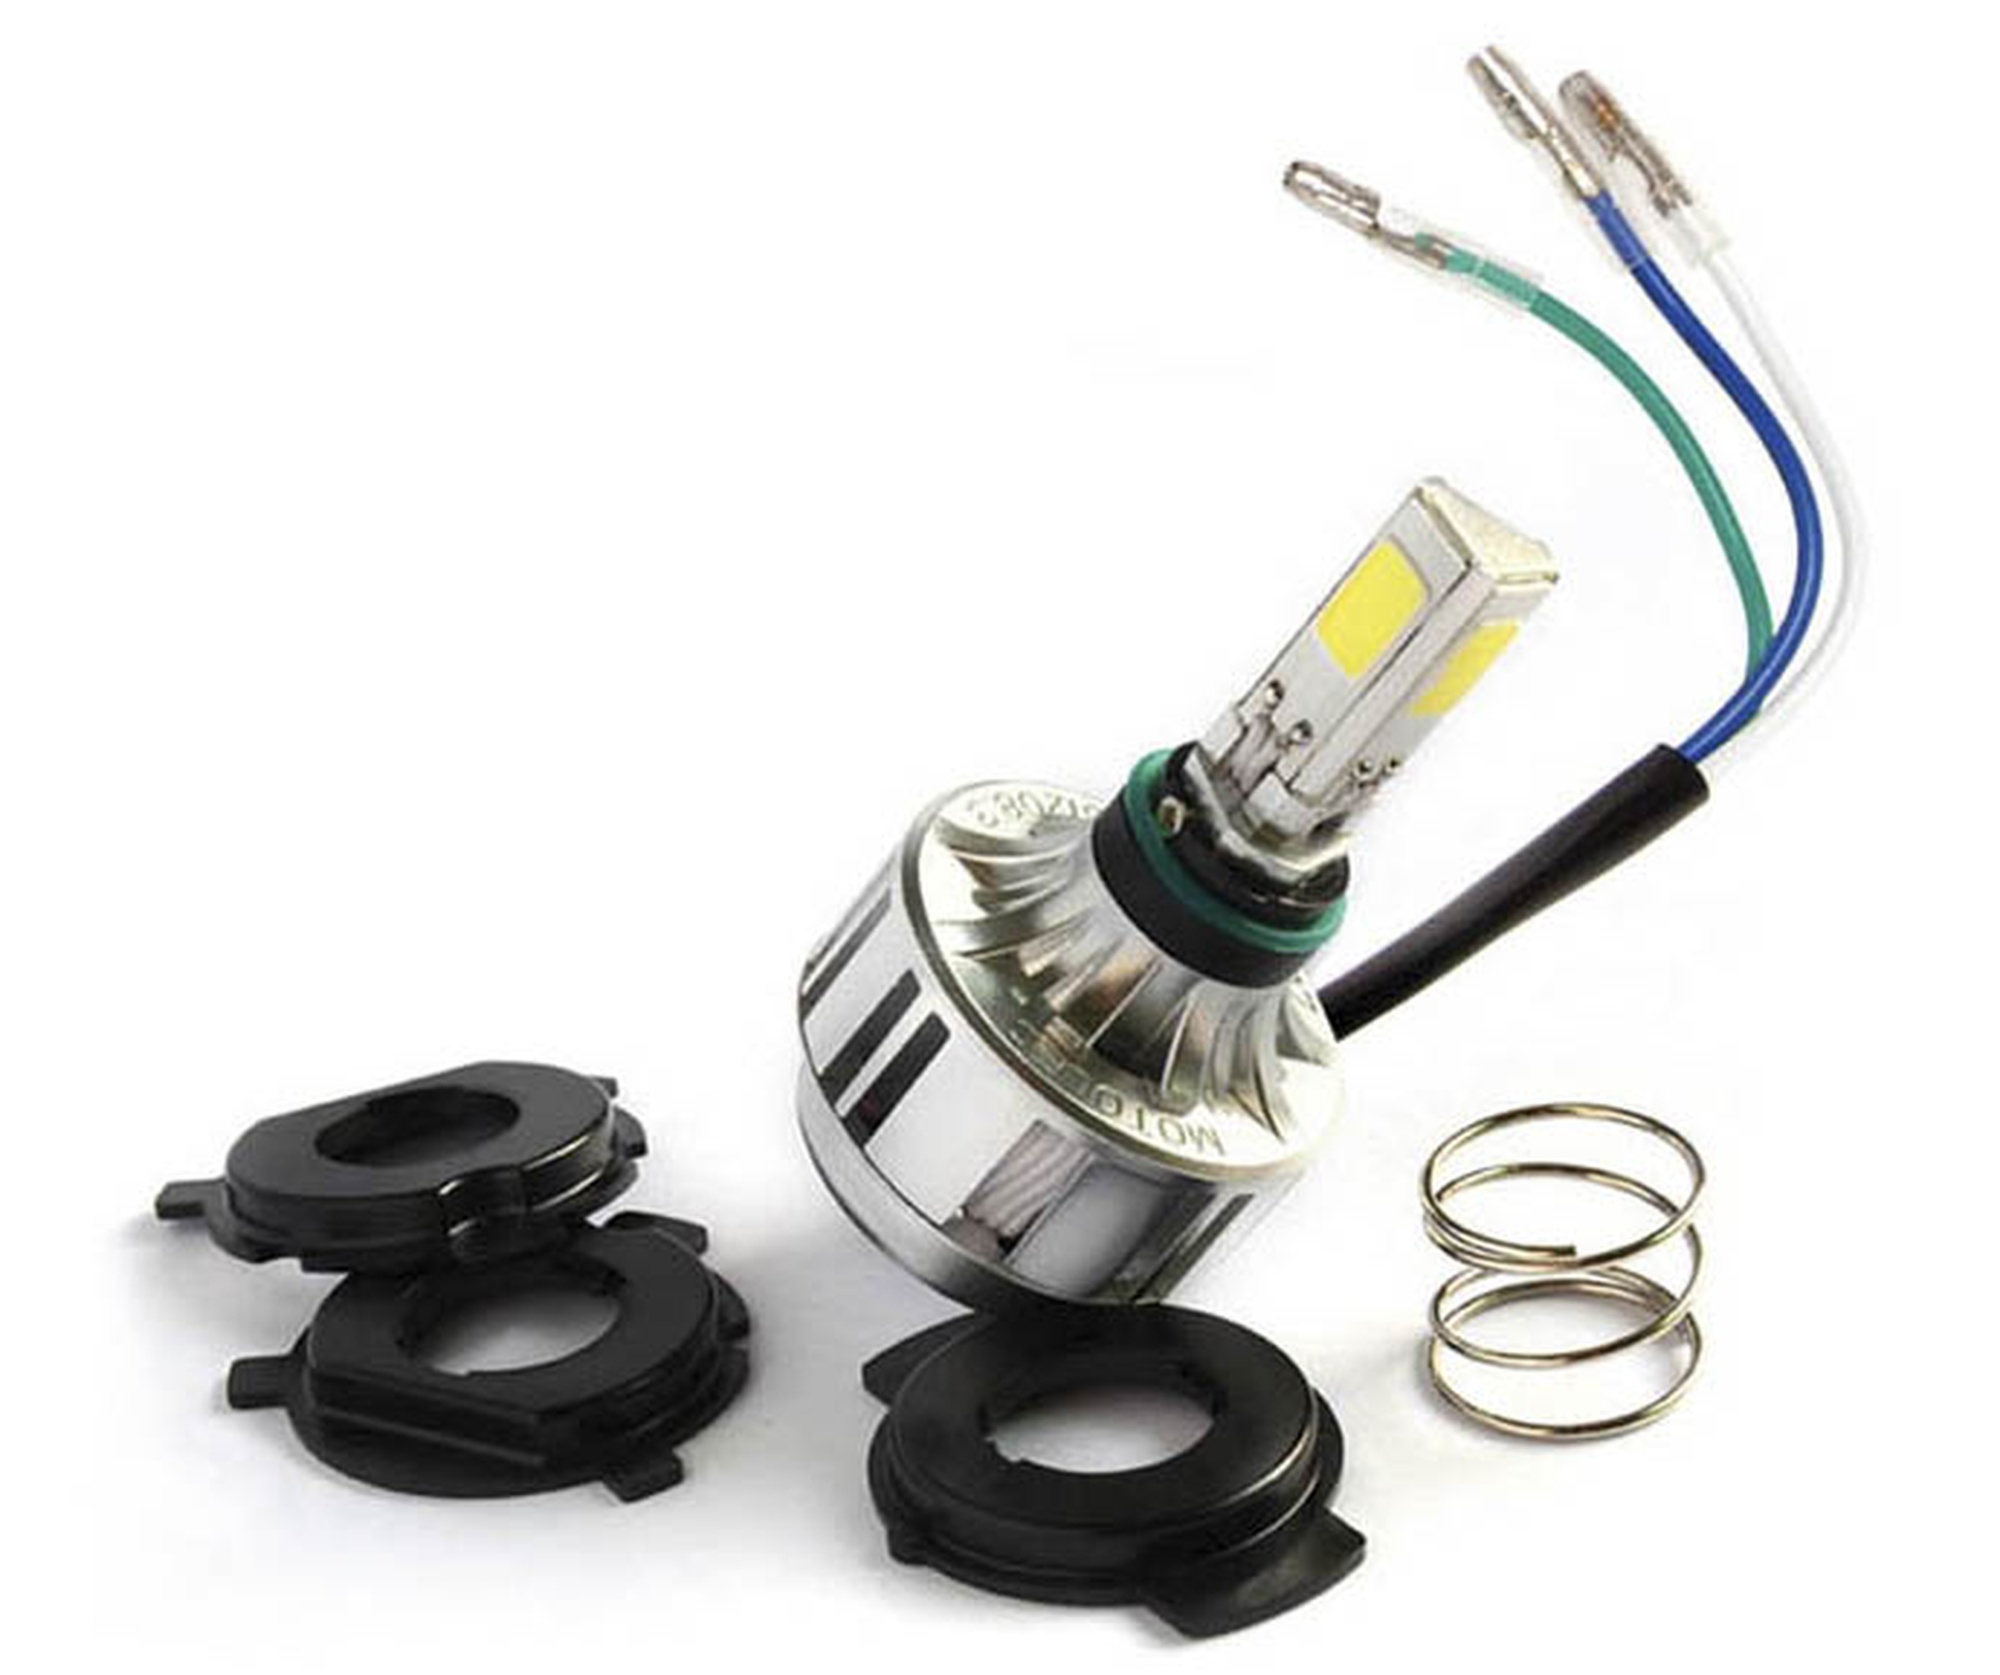 Obrázek produktu Enduro LED kit (pro žárovky H1, H2, H3, H4, H7, + KTM + Sherco), RTECH R-LEDRTECH016